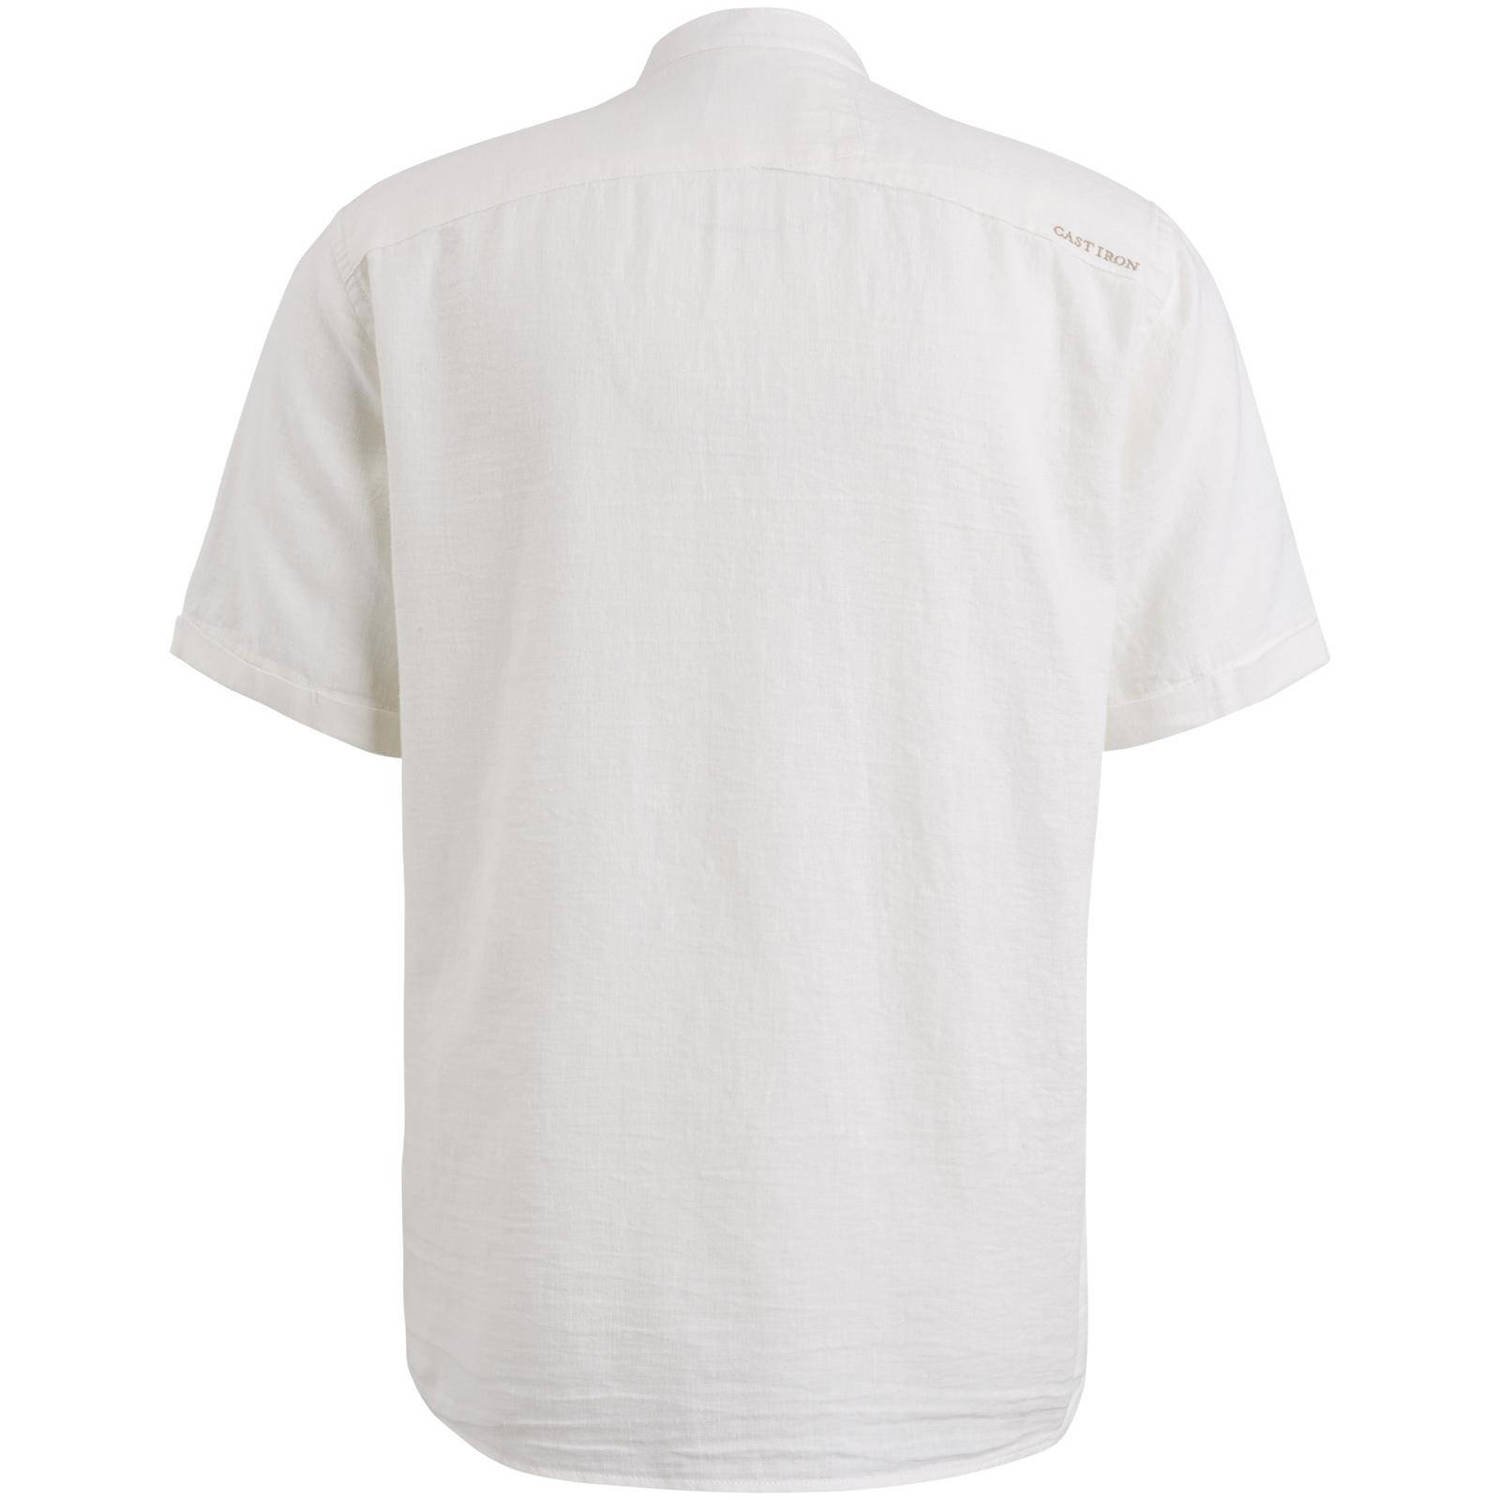 Cast Iron regular fit overhemd met logo off white